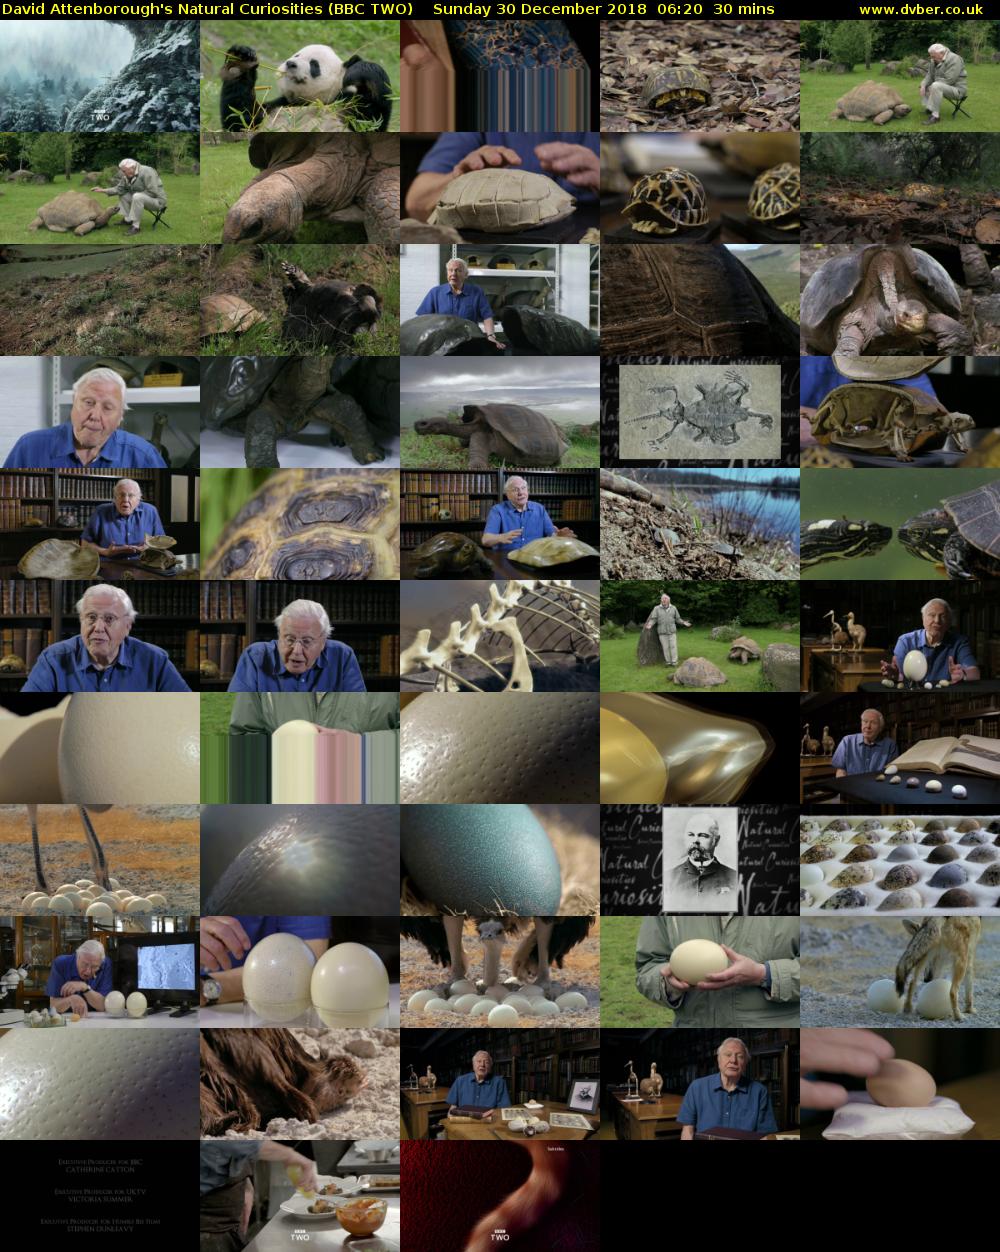 David Attenborough's Natural Curiosities (BBC TWO) Sunday 30 December 2018 06:20 - 06:50